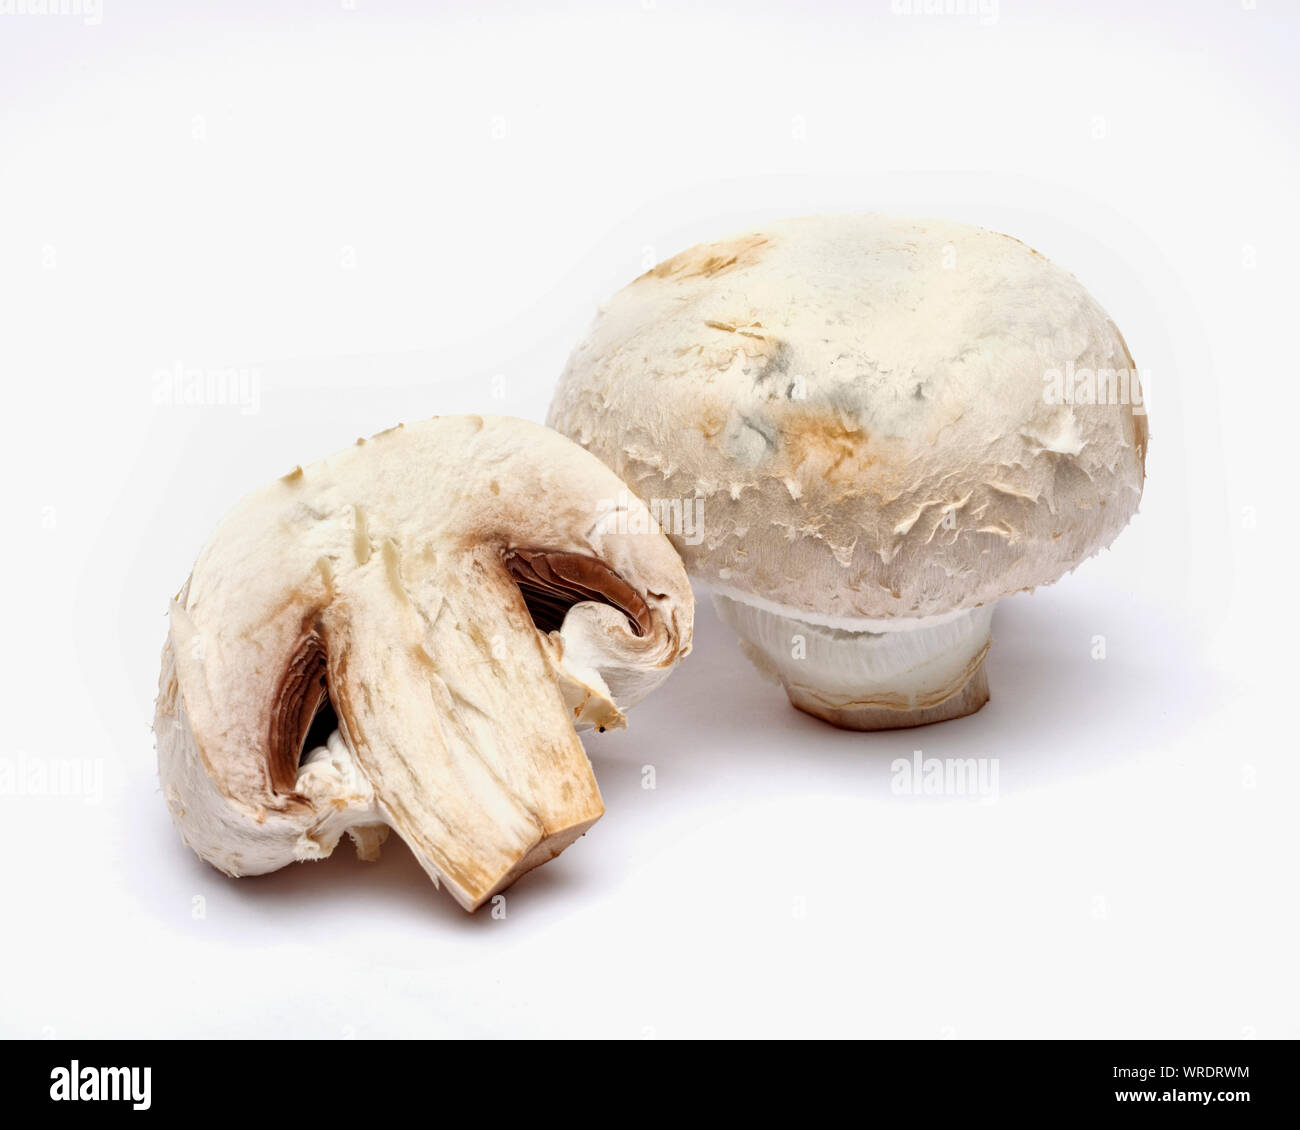 Funghi champignon interi e tagliate a metà su sfondo bianco Foto Stock